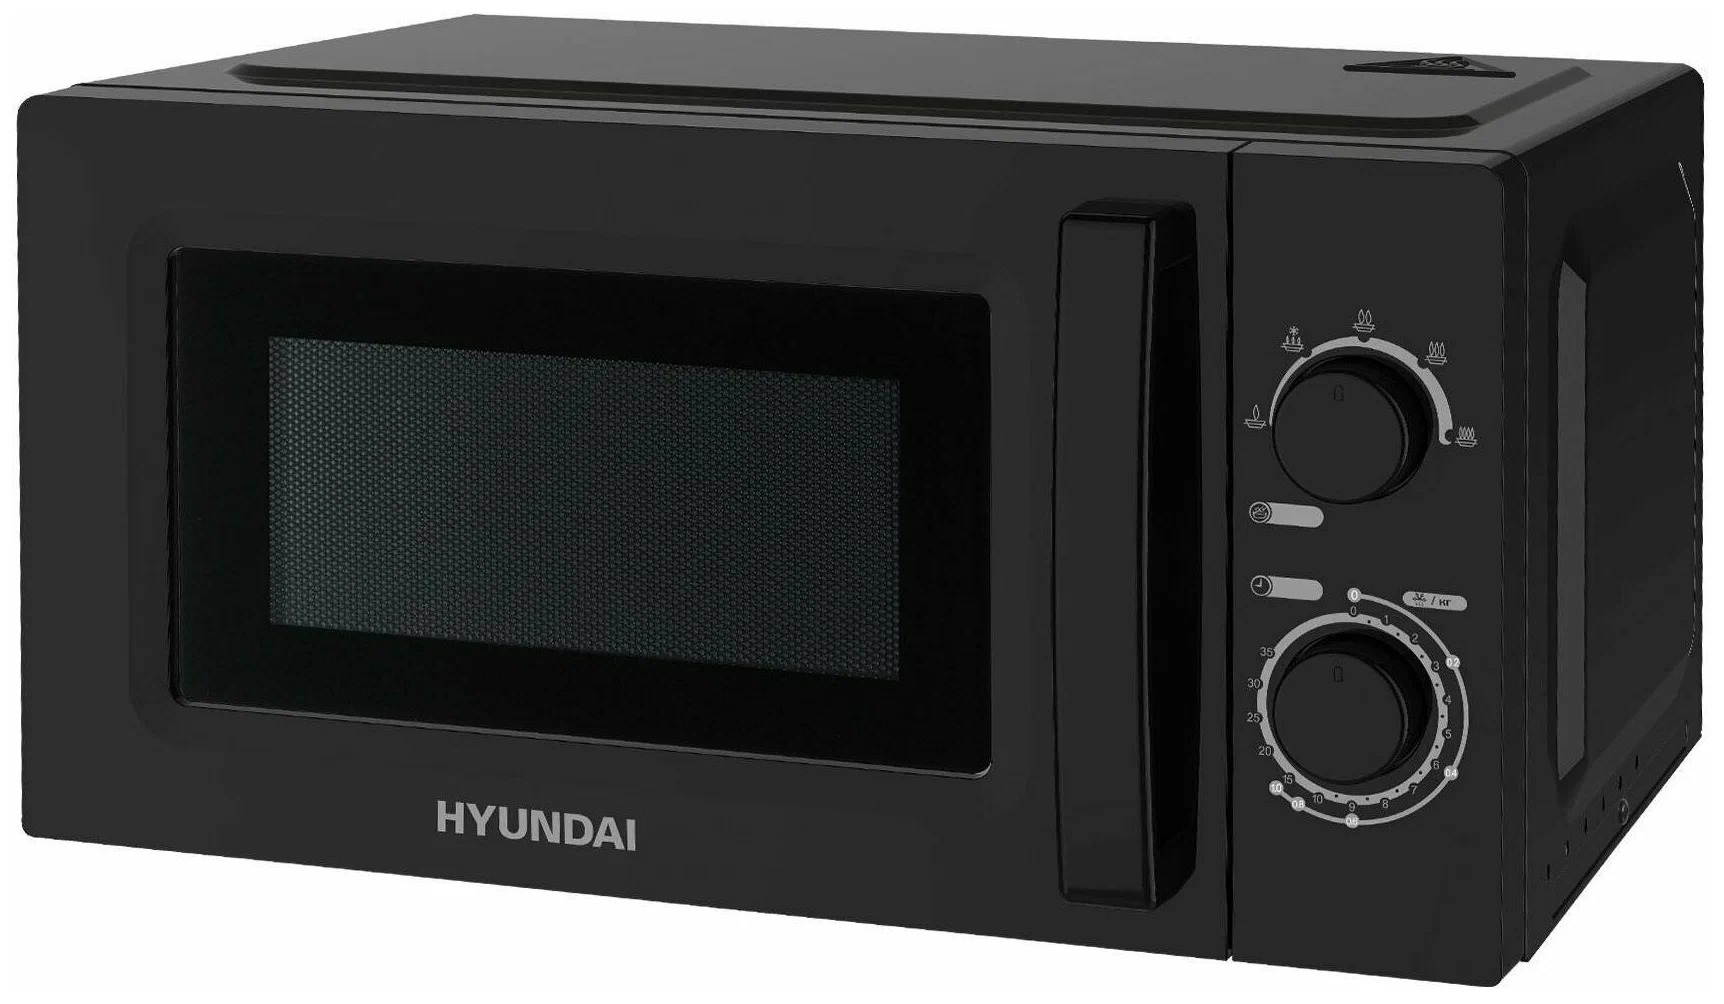 Микроволновая печь Hyundai Hym-M2008, цвет черный